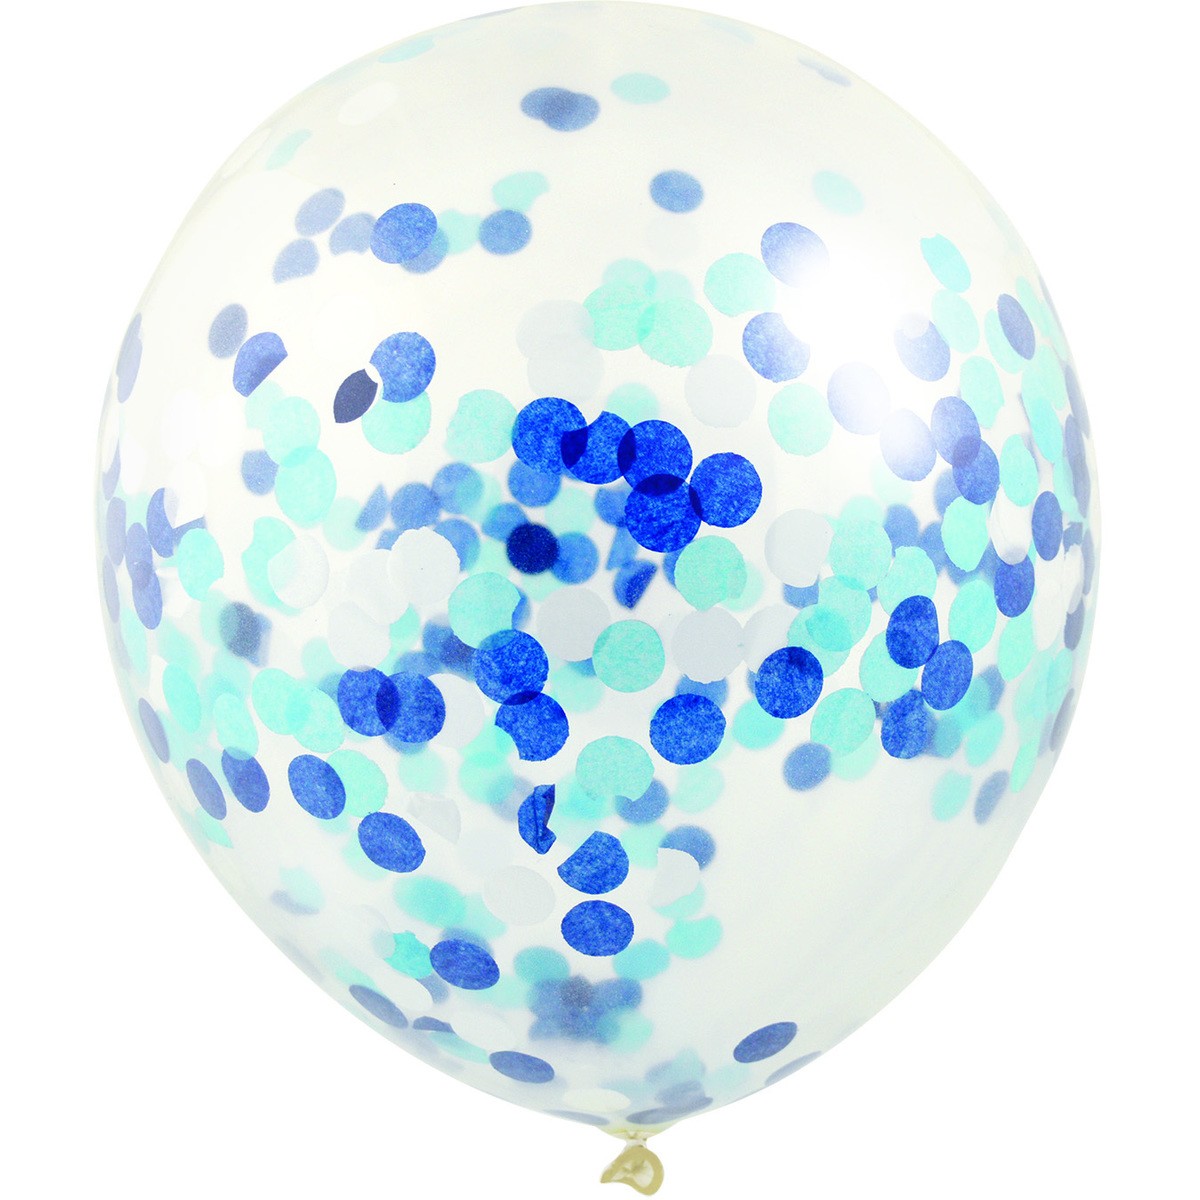 11" Confetti Balloon - Blue Confetti PK3